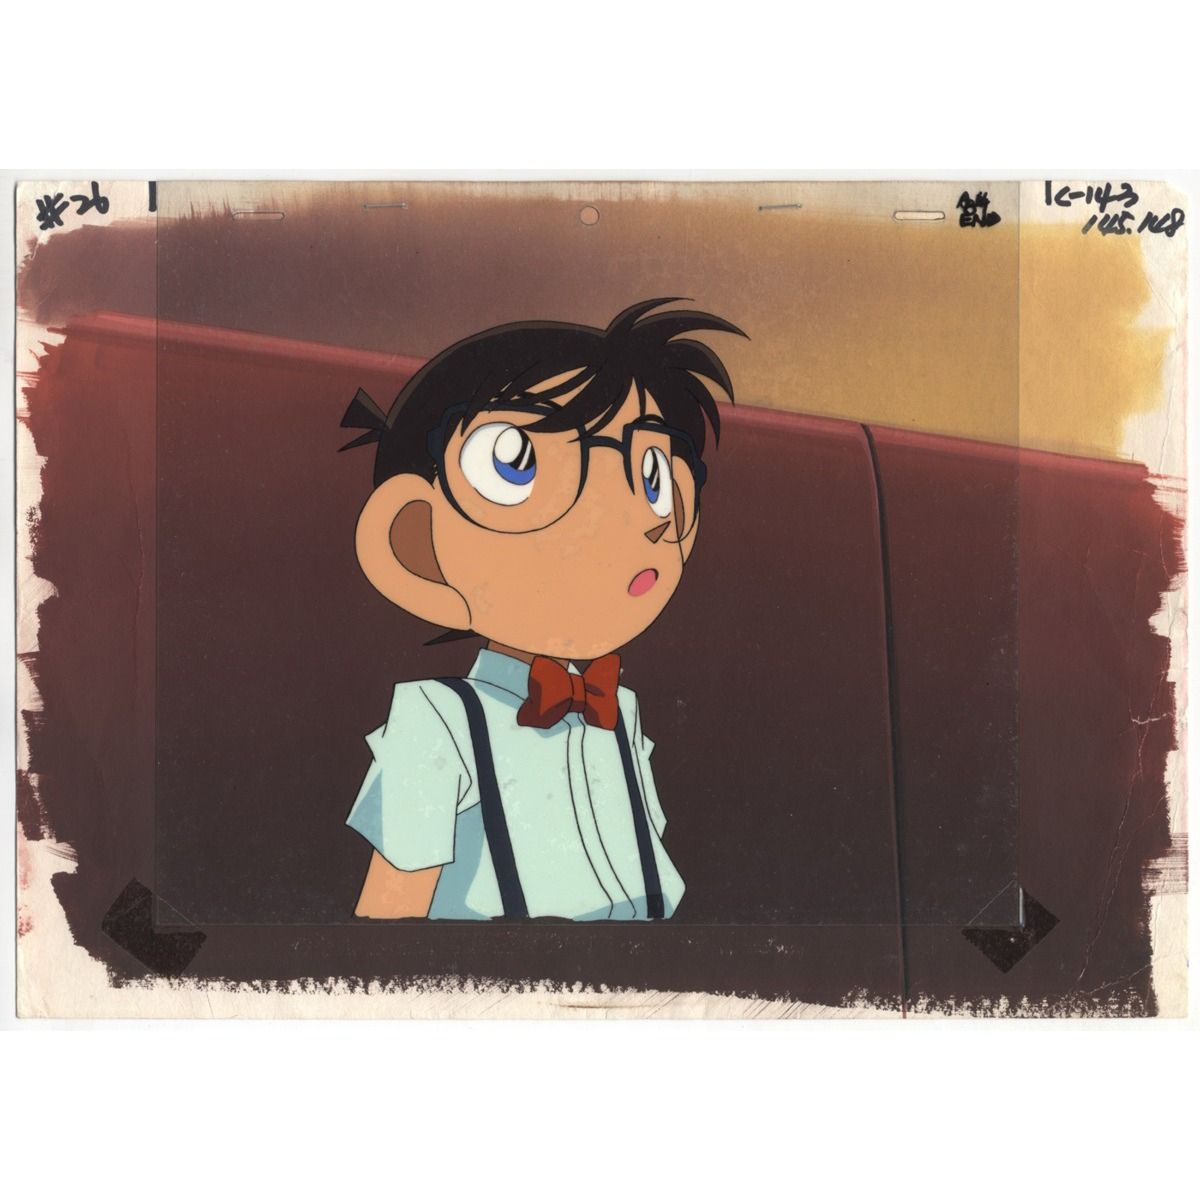 Buy Original Detective Conan Anime Cel Online